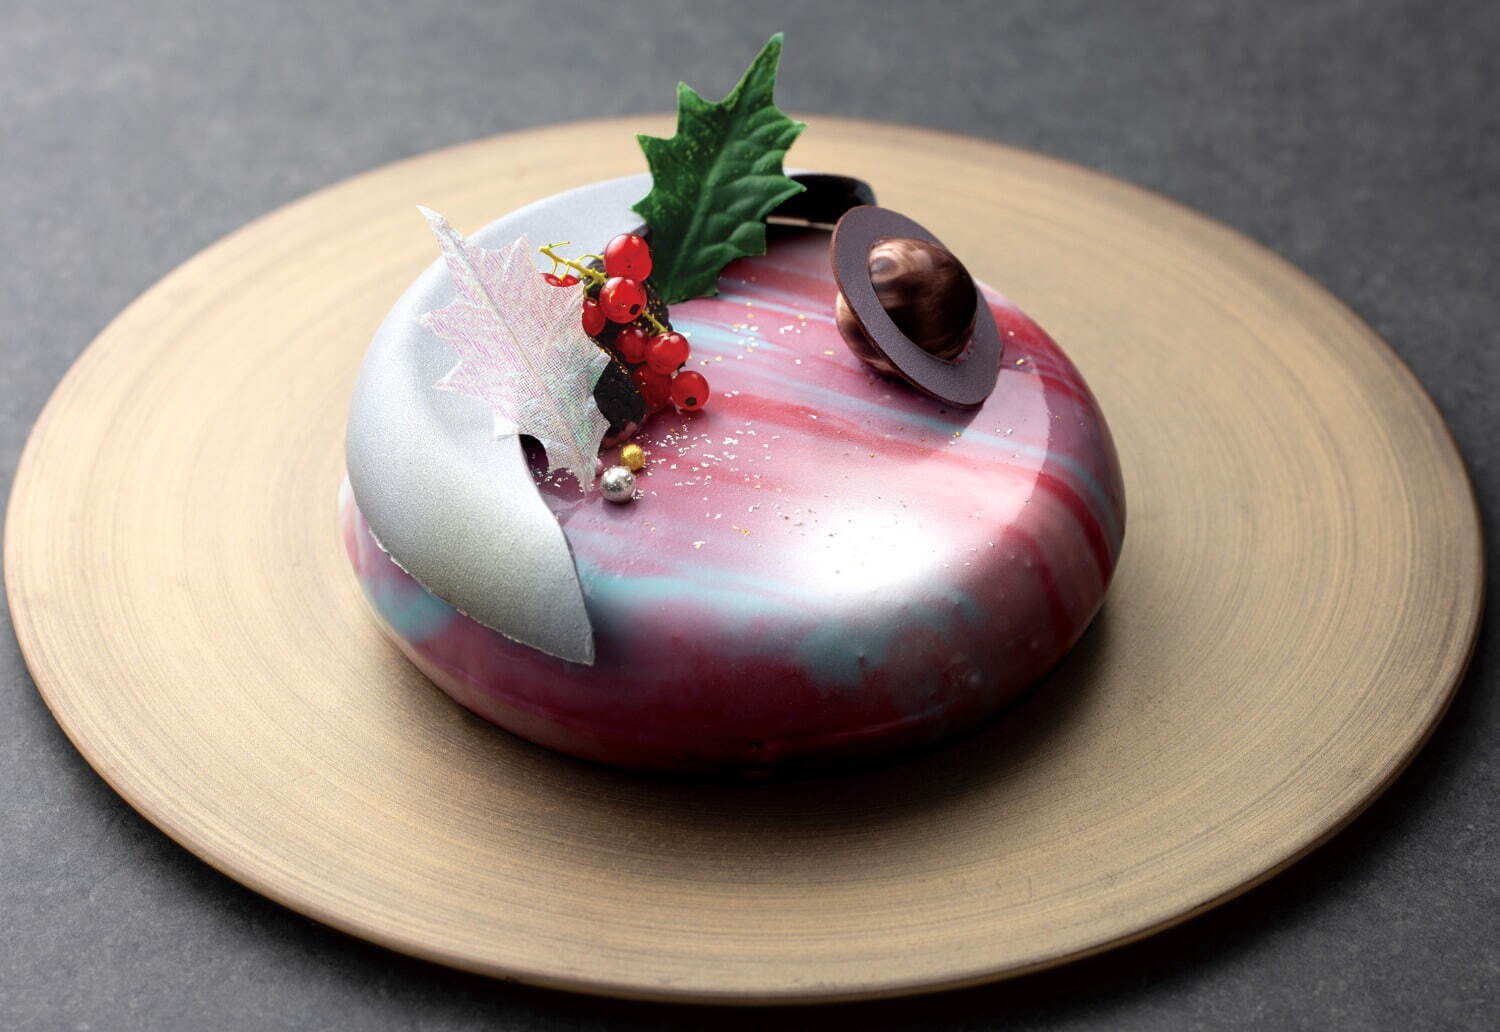 琵琶湖マリオットホテル - “星の世界”を表現した柚子香るグラデーションケーキ